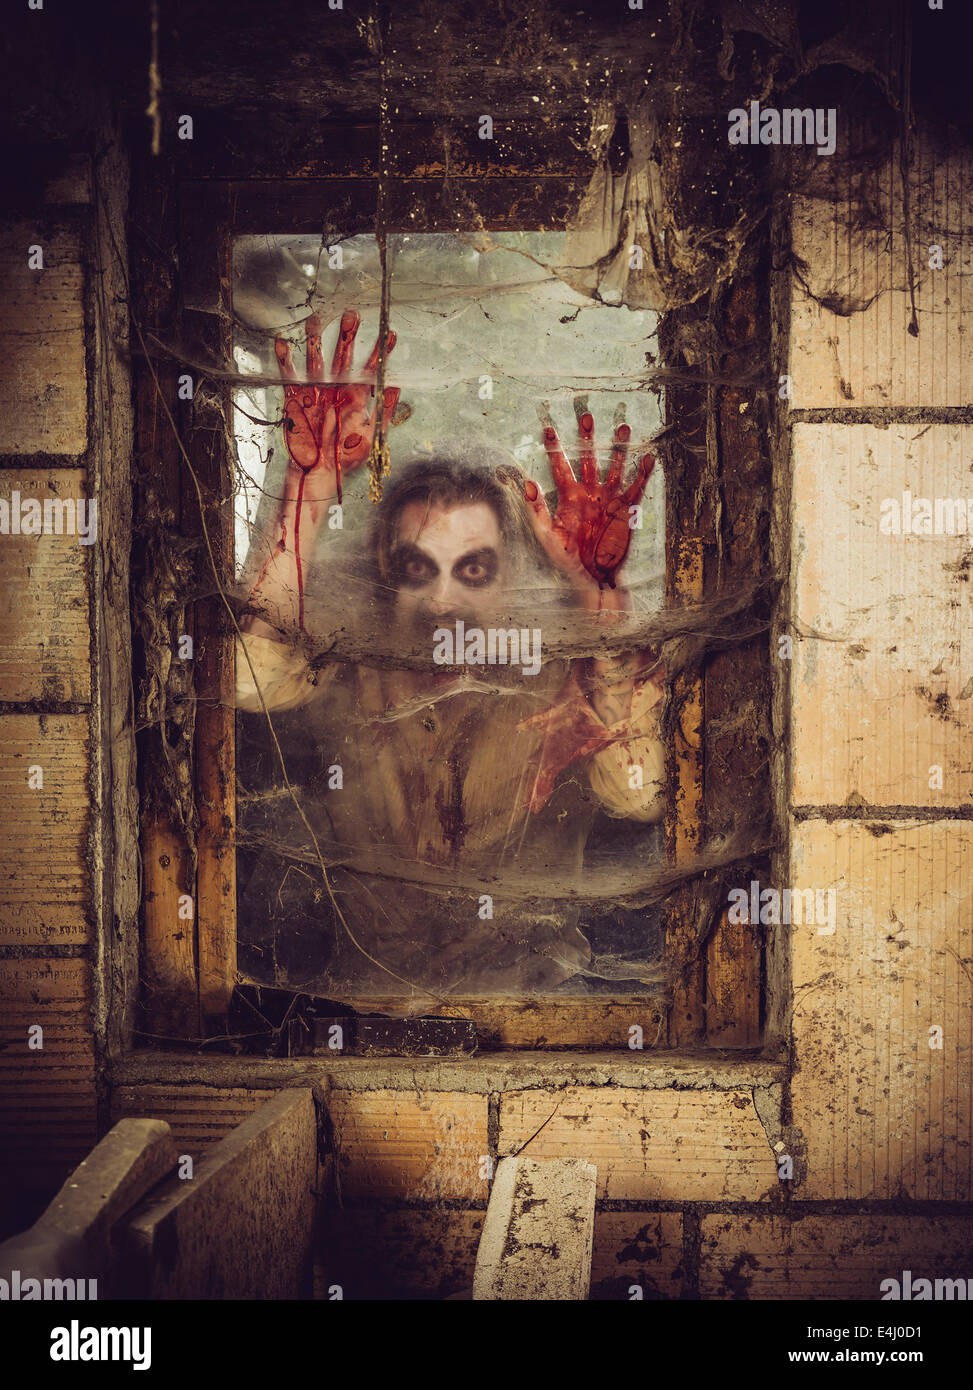 Foto de un zombie fuera de una ventana que está cubierto de sangre, spiderwebs y suciedad. Foto de stock